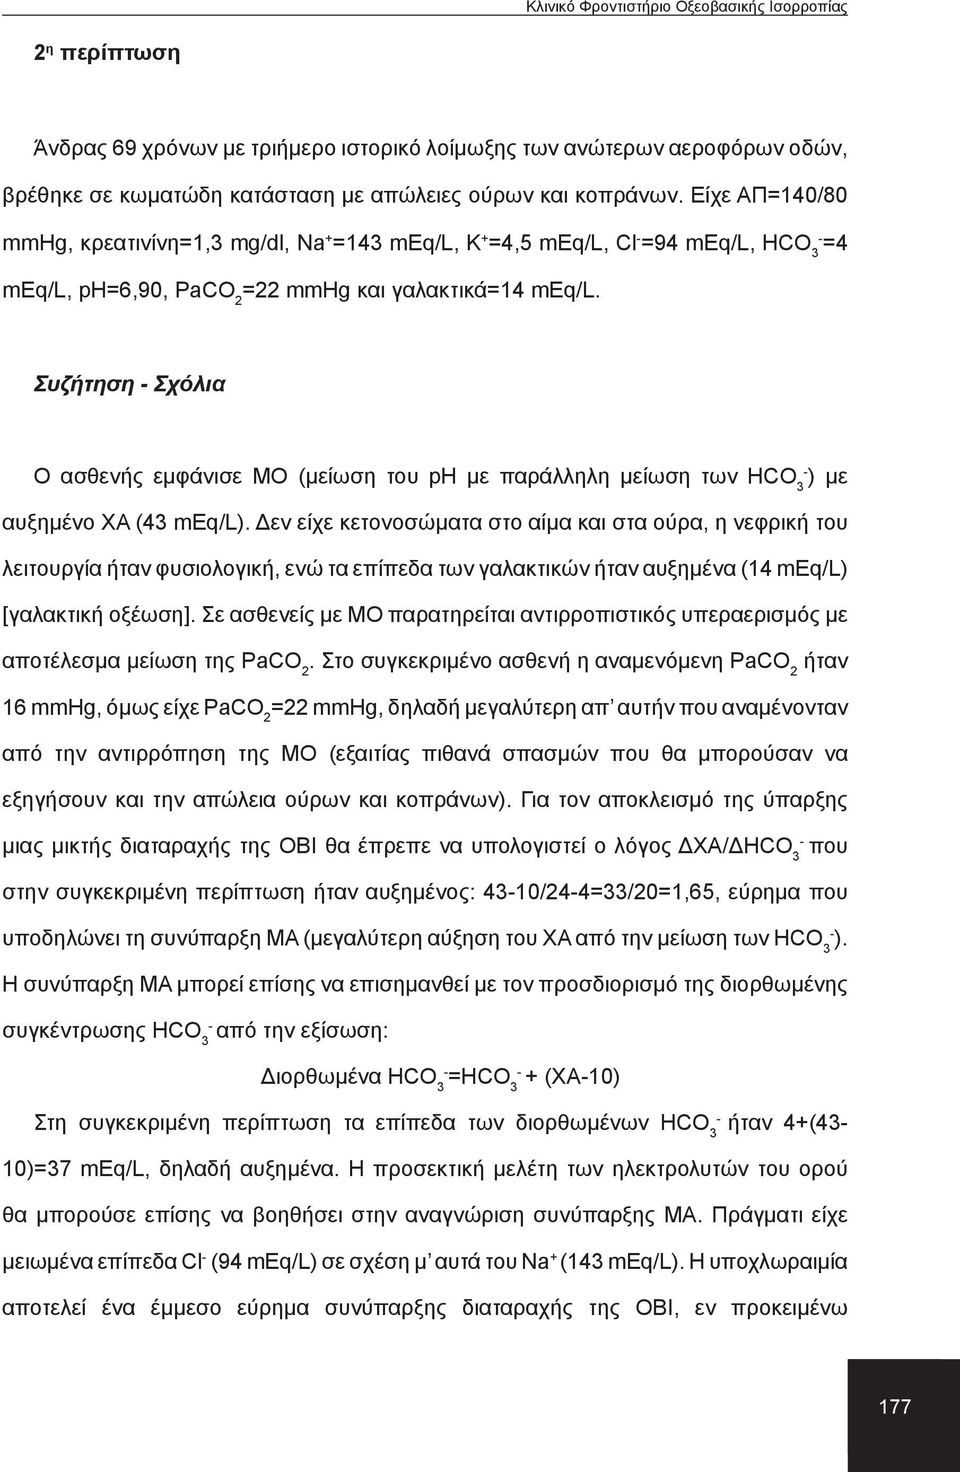 Συζήτηση Σχόλια Ο ασθενής εμφάνισε ΜΟ (μείωση του ph με παράλληλη μείωση των ΗCO 3 ) με αυξημένο ΧΑ (43 meq/l).